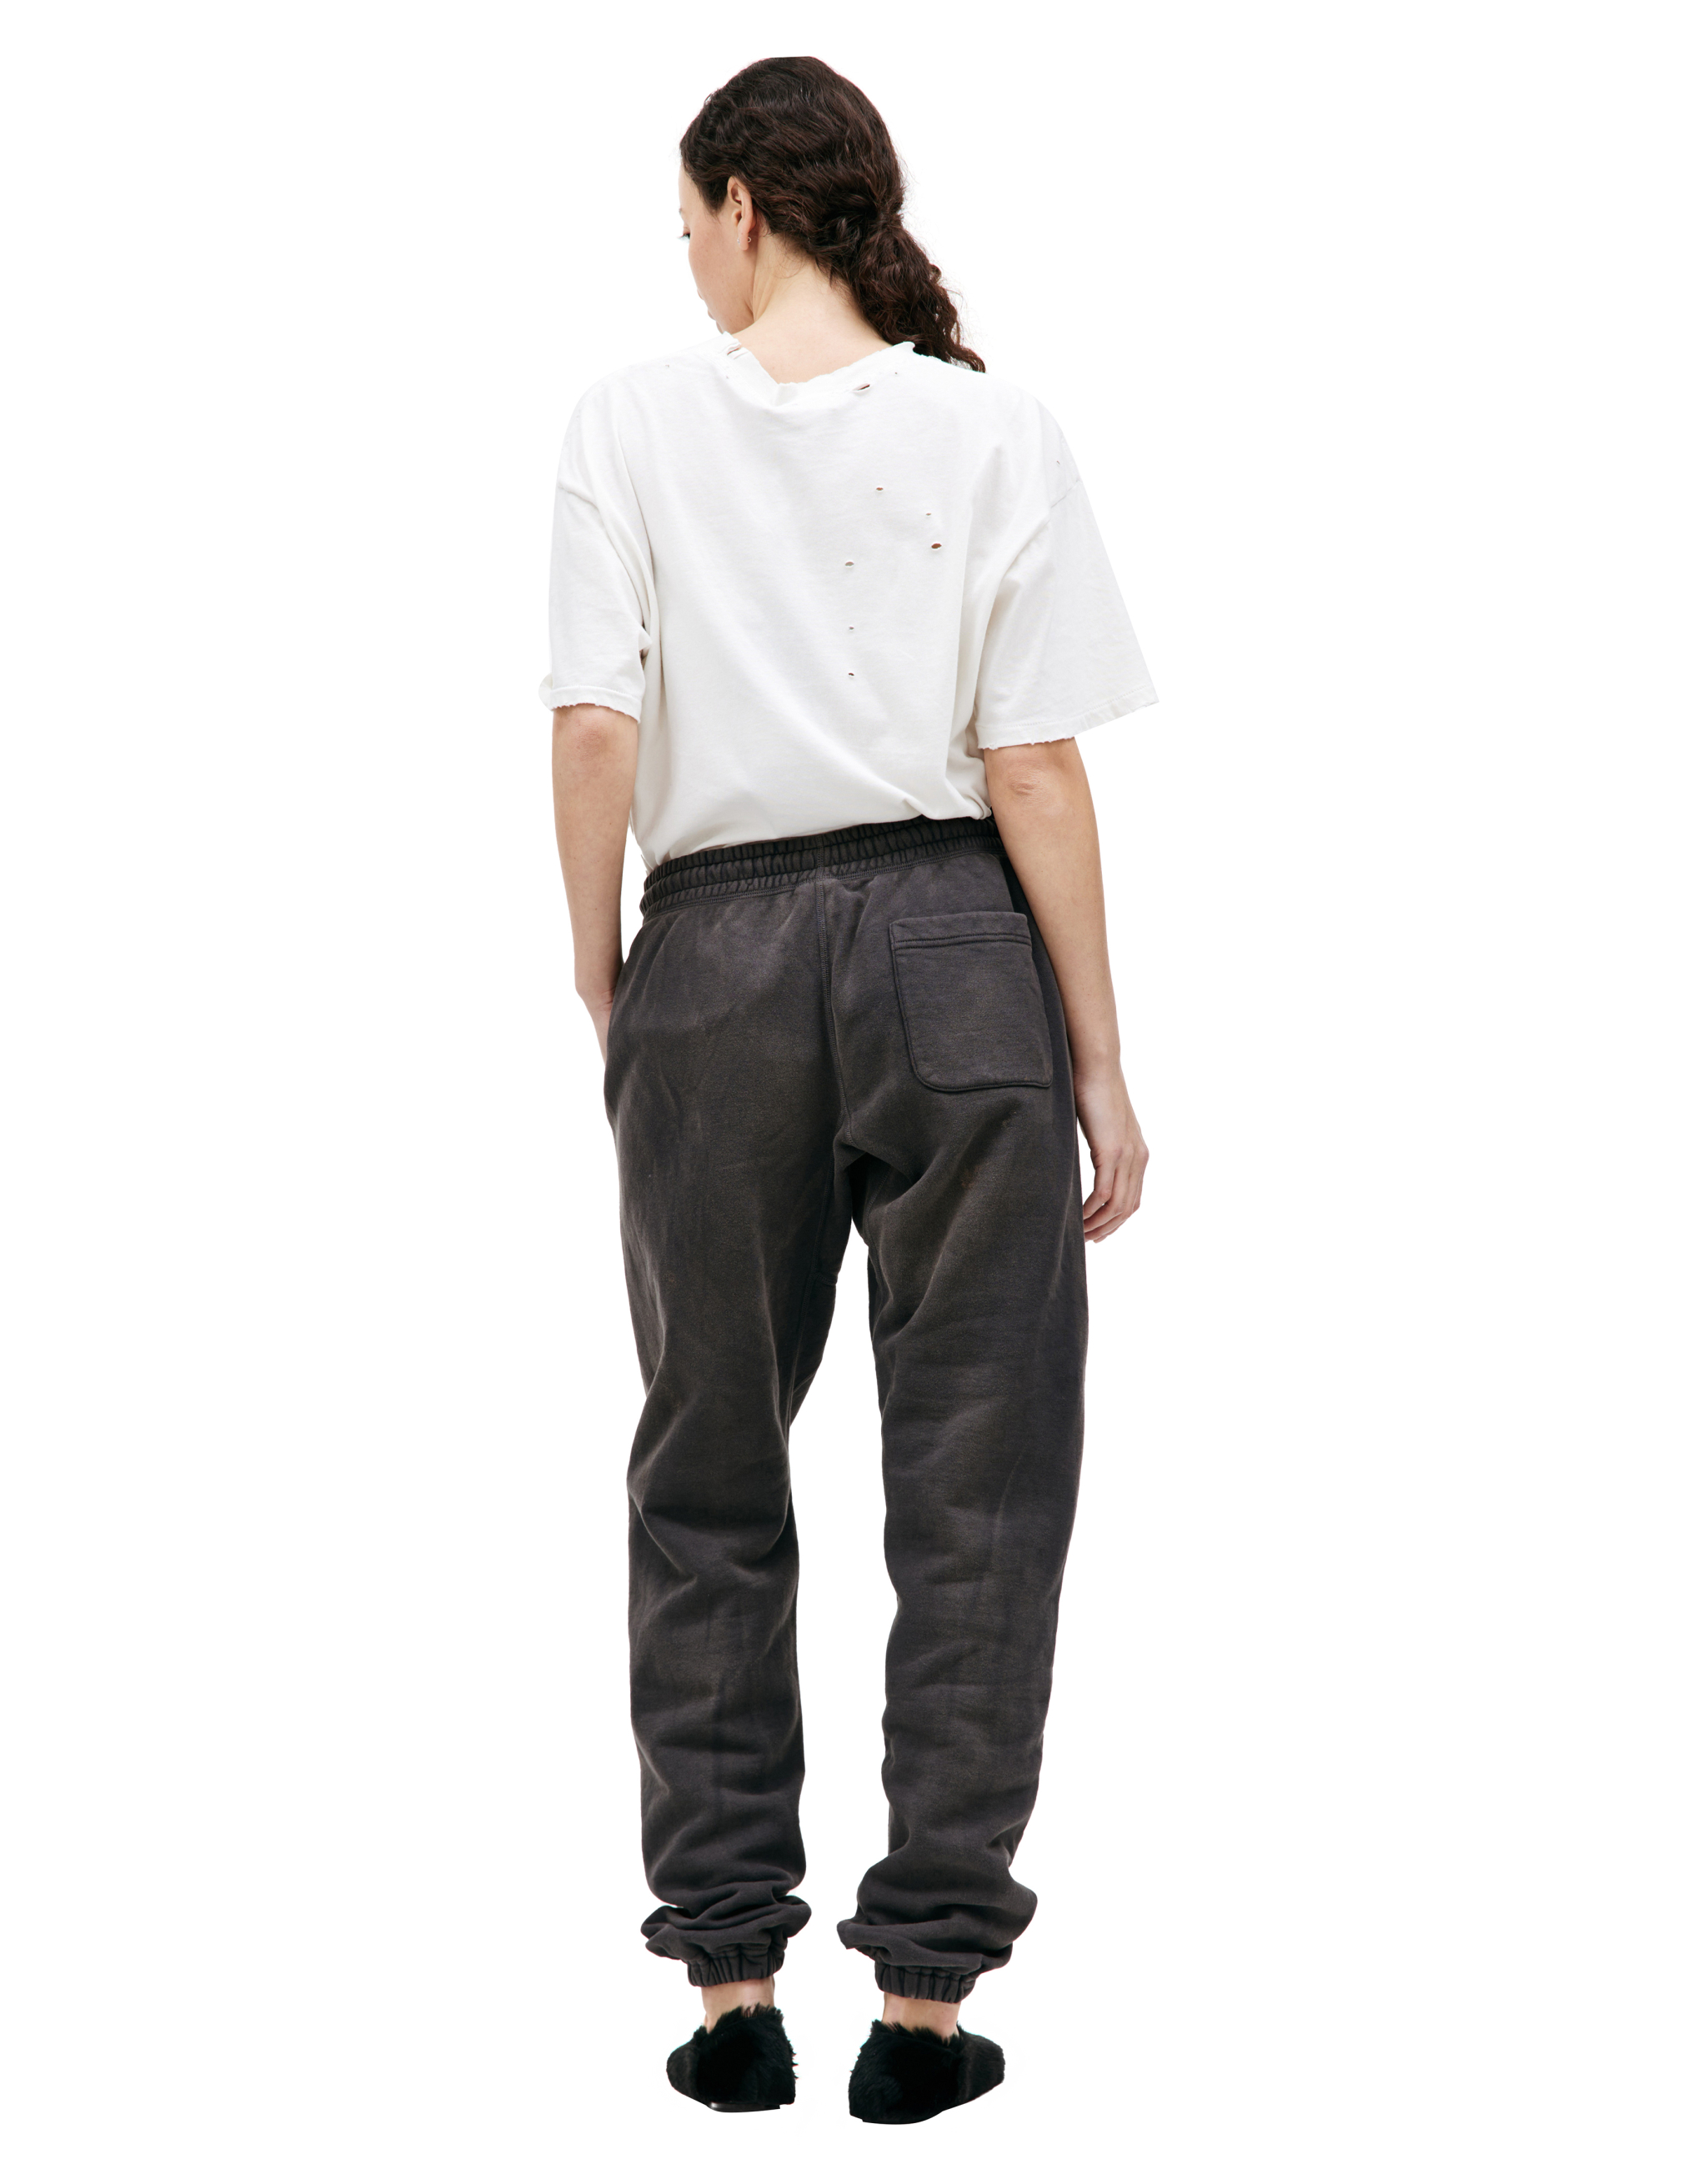 Спортивные брюки с принтом Saint Michael SM-A23-0000-C04, размер M;L;XL - фото 3